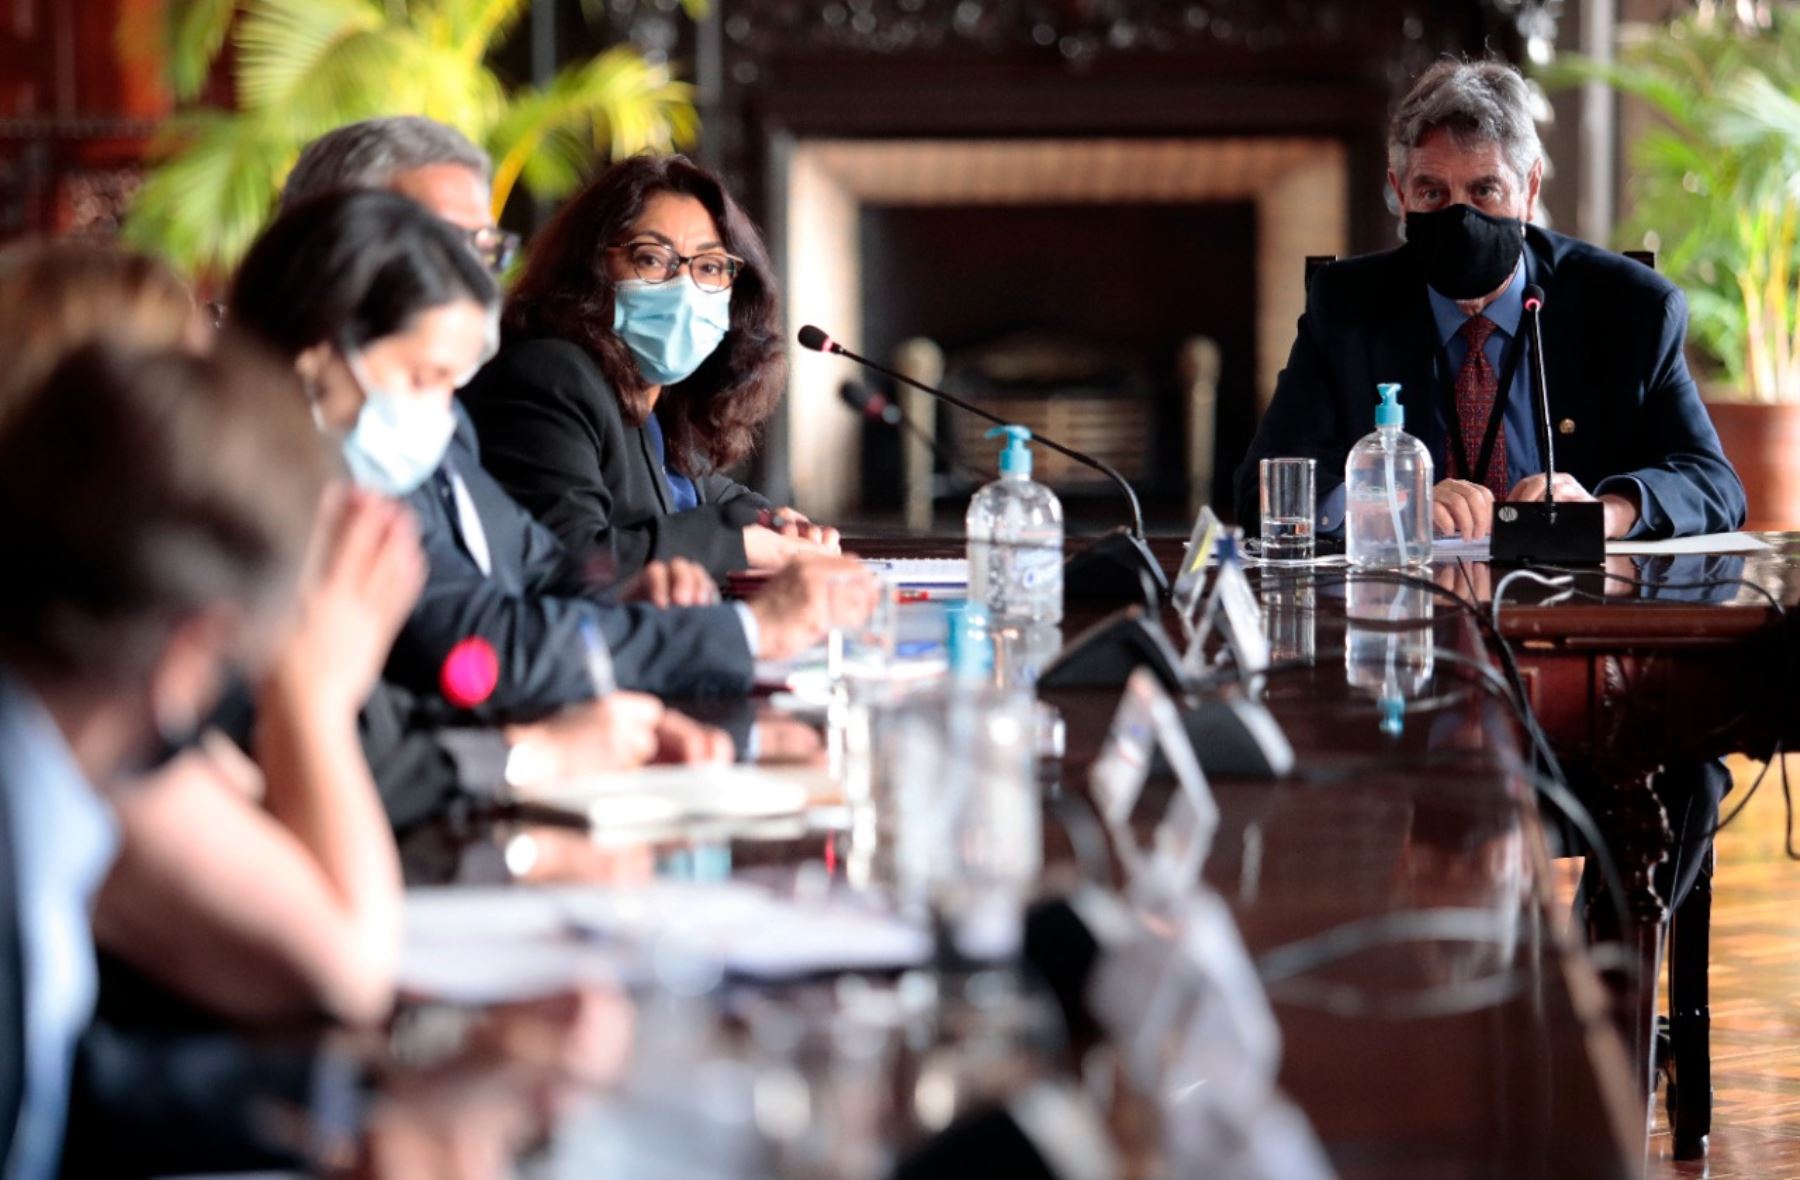 El presidente Francisco Sagasti lideró hoy junto a la titular de la PCM, Violeta Bermudez, una reunión de coordinación con el Grupo de Trabajo Multisectorial encargado de apoyar el proceso de vacunación. Foto: PCM